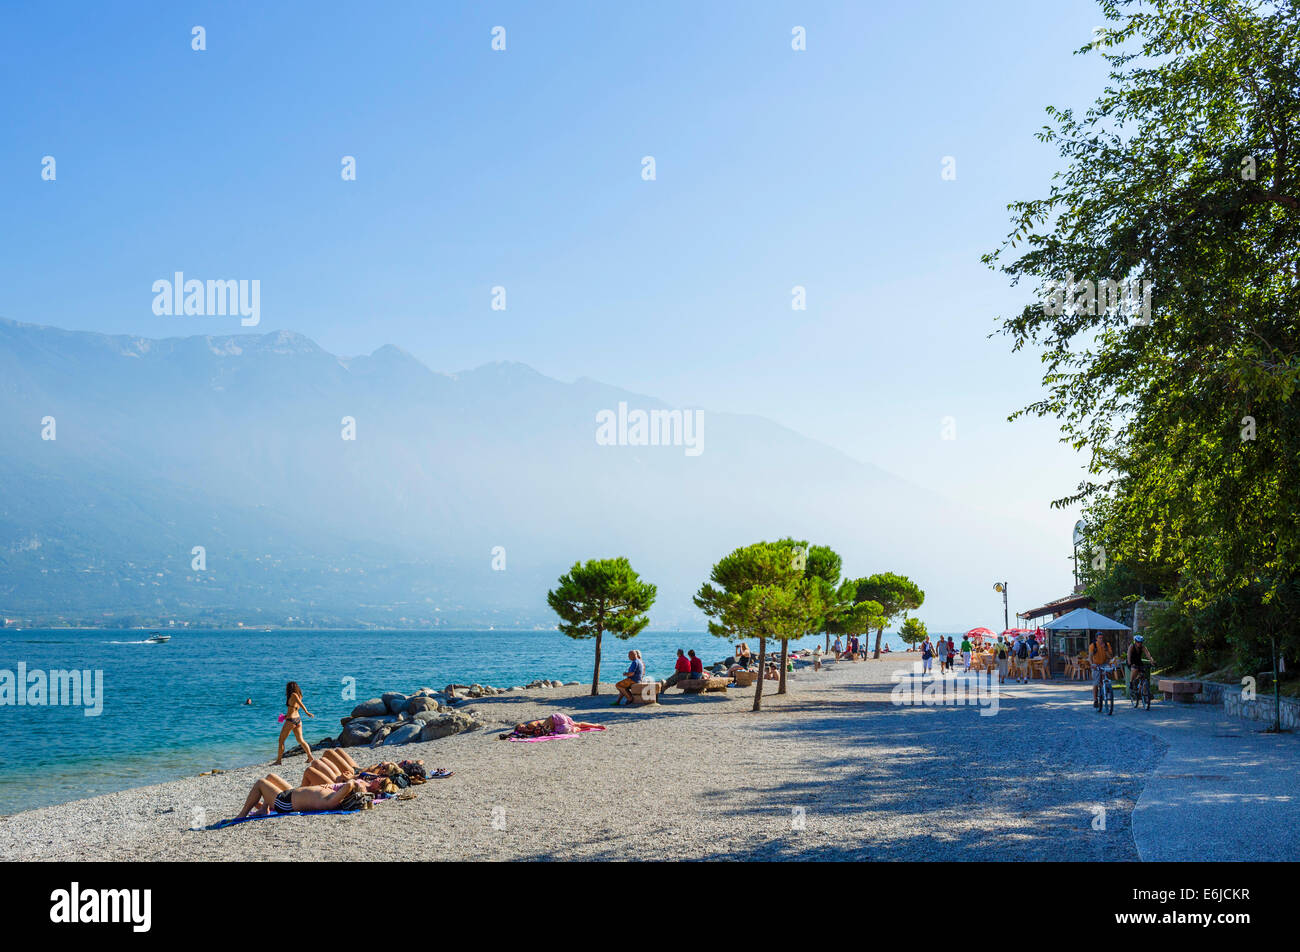 La spiaggia di Limone sul Garda Lago di Garda, Lombardia, Italia Foto Stock